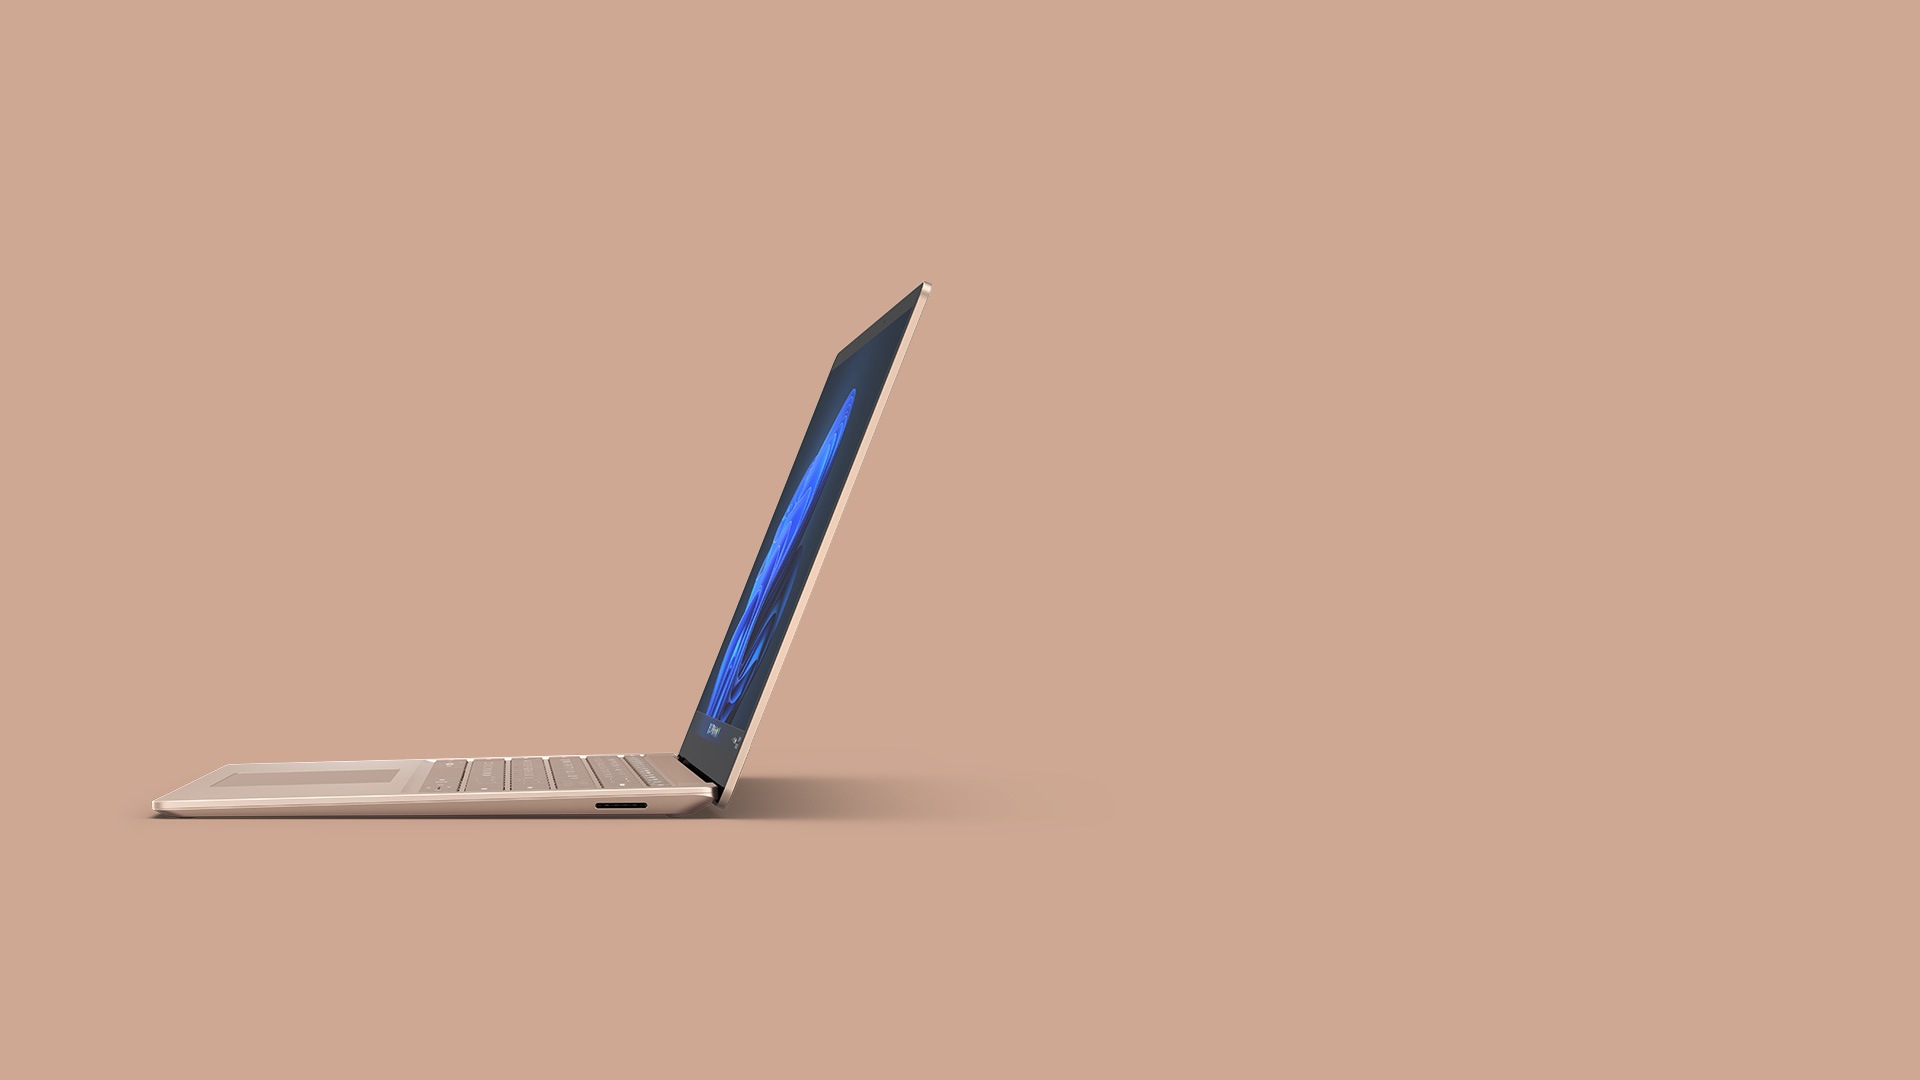 金屬沙岩色 Surface Laptop 4 13.5 吋
